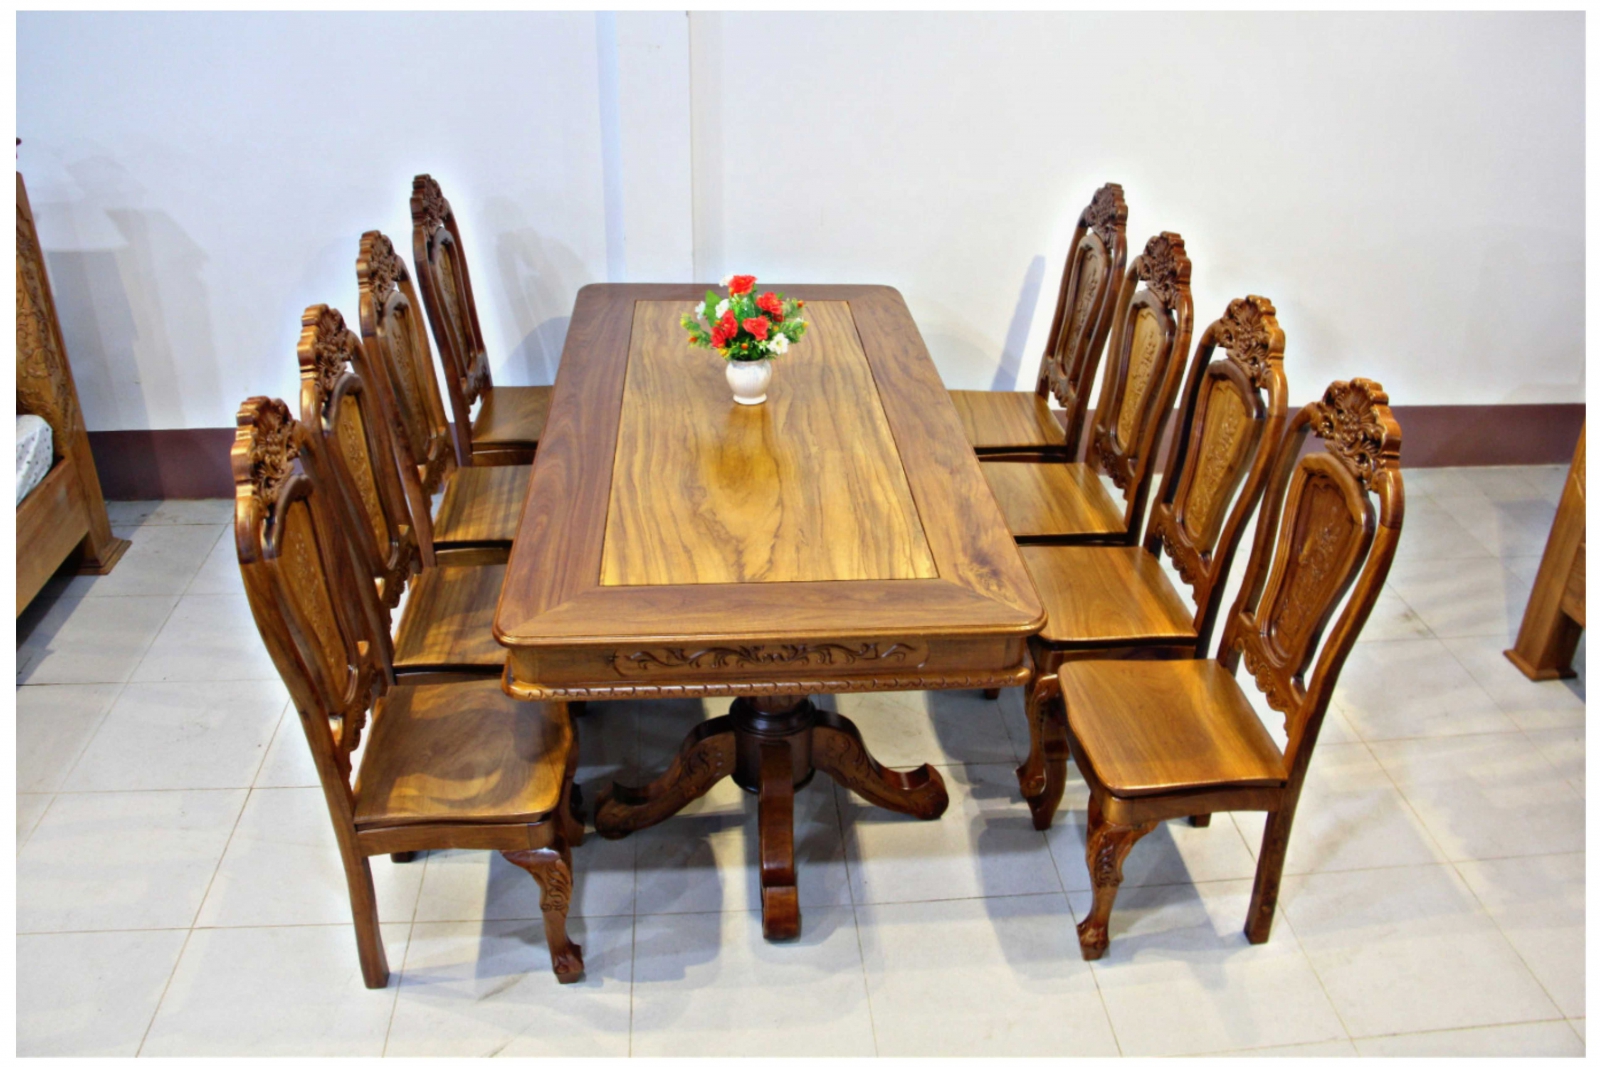 Bàn ăn gỗ đỏ với 8 ghế sẽ là lựa chọn hoàn hảo cho những ai yêu thích phong cách thiết kế đậm chất cổ điển. Với chất liệu gỗ đỏ cao cấp và họa tiết trang trí tinh xảo, bàn ăn này sẽ mang đến cho không gian bữa ăn của bạn vẻ đẹp cổ điển tinh tế.